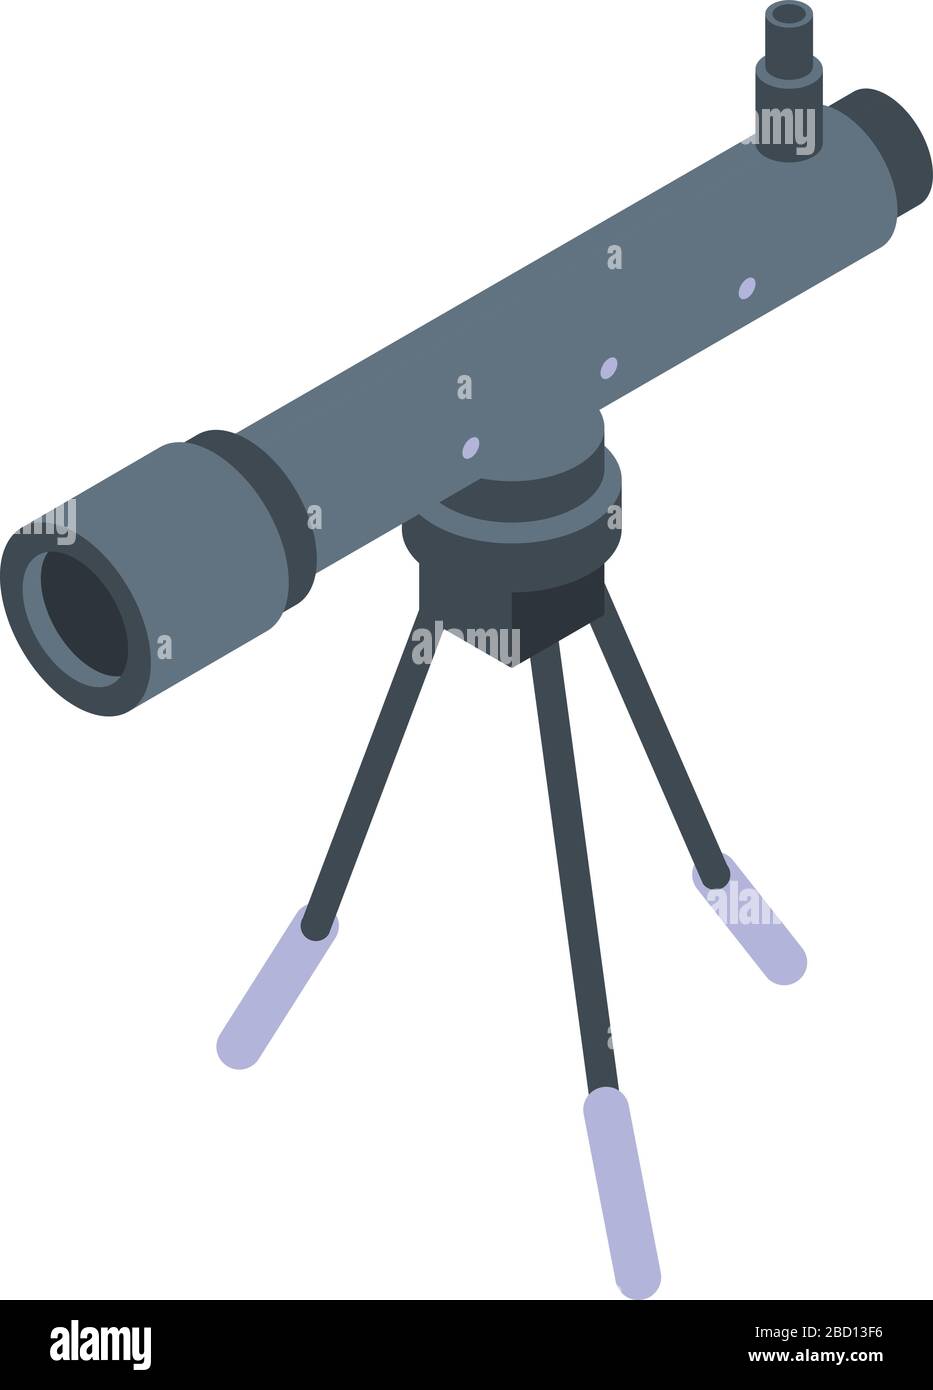 Home telescope icon, isometric style Stock Vector